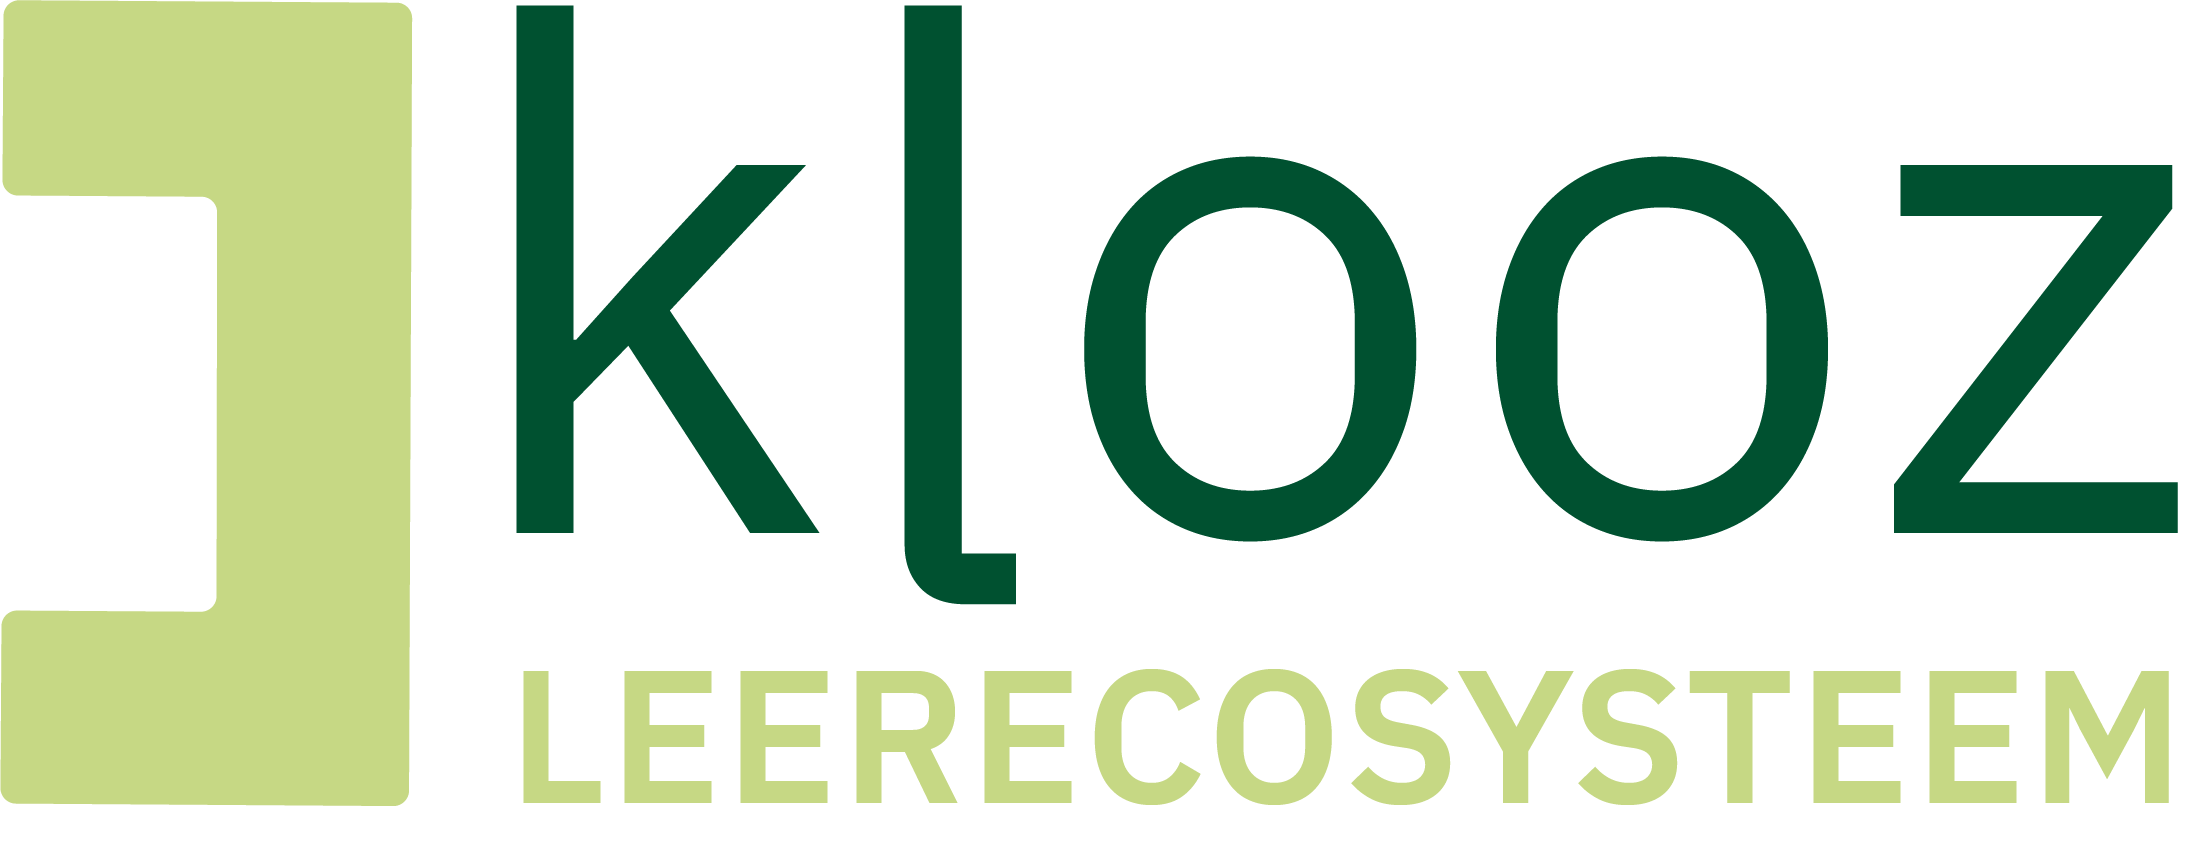 Welkom op de website van Project Klooz, leerecosysteem